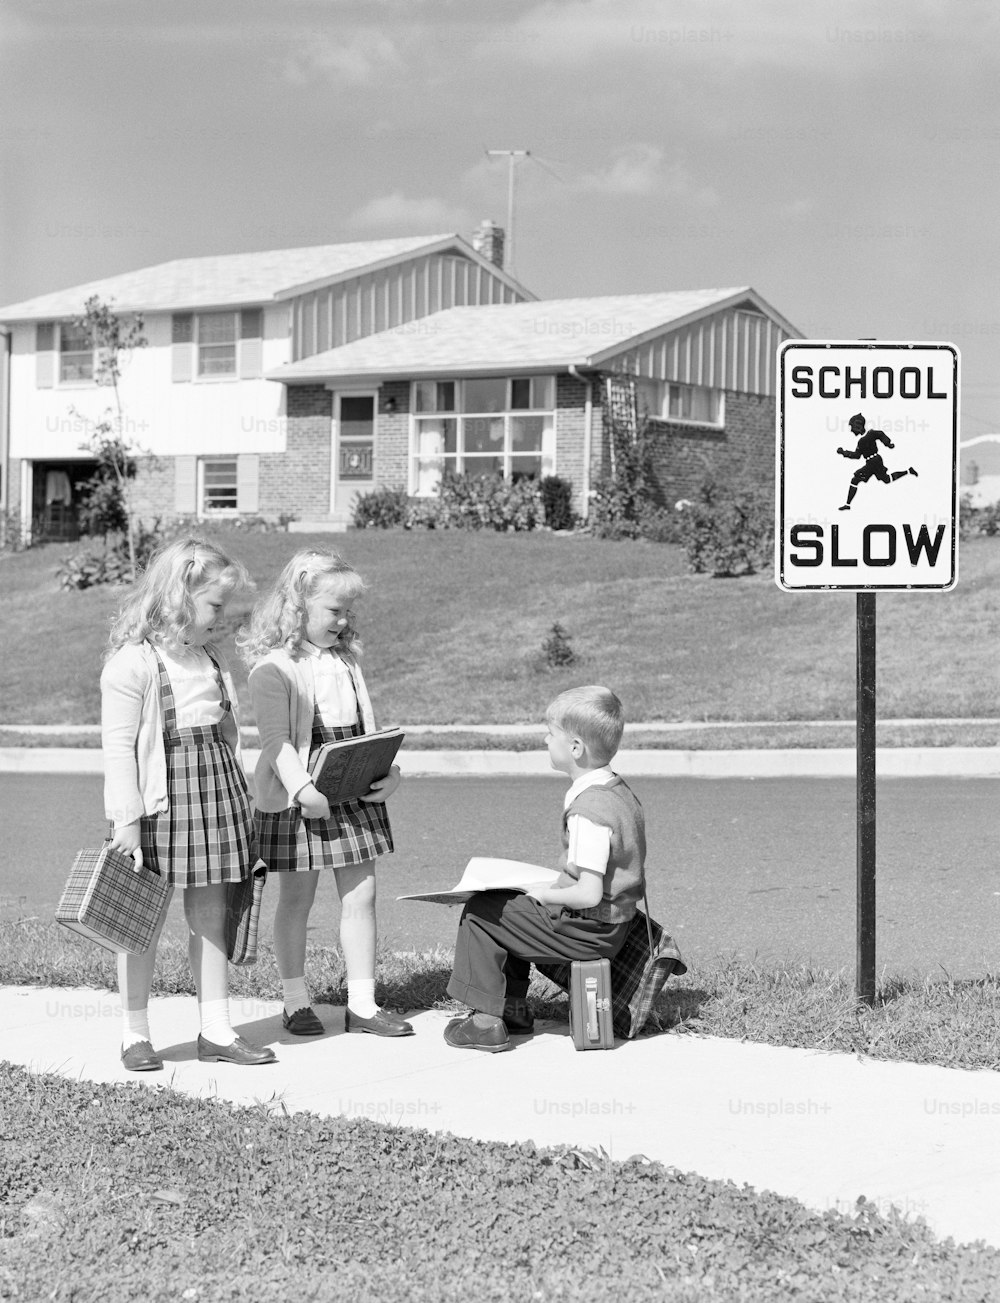 ÉTATS-UNIS - Vers les années 1950 : Deux filles marchant vers l’école, un garçon assis sur une boîte à lunch.